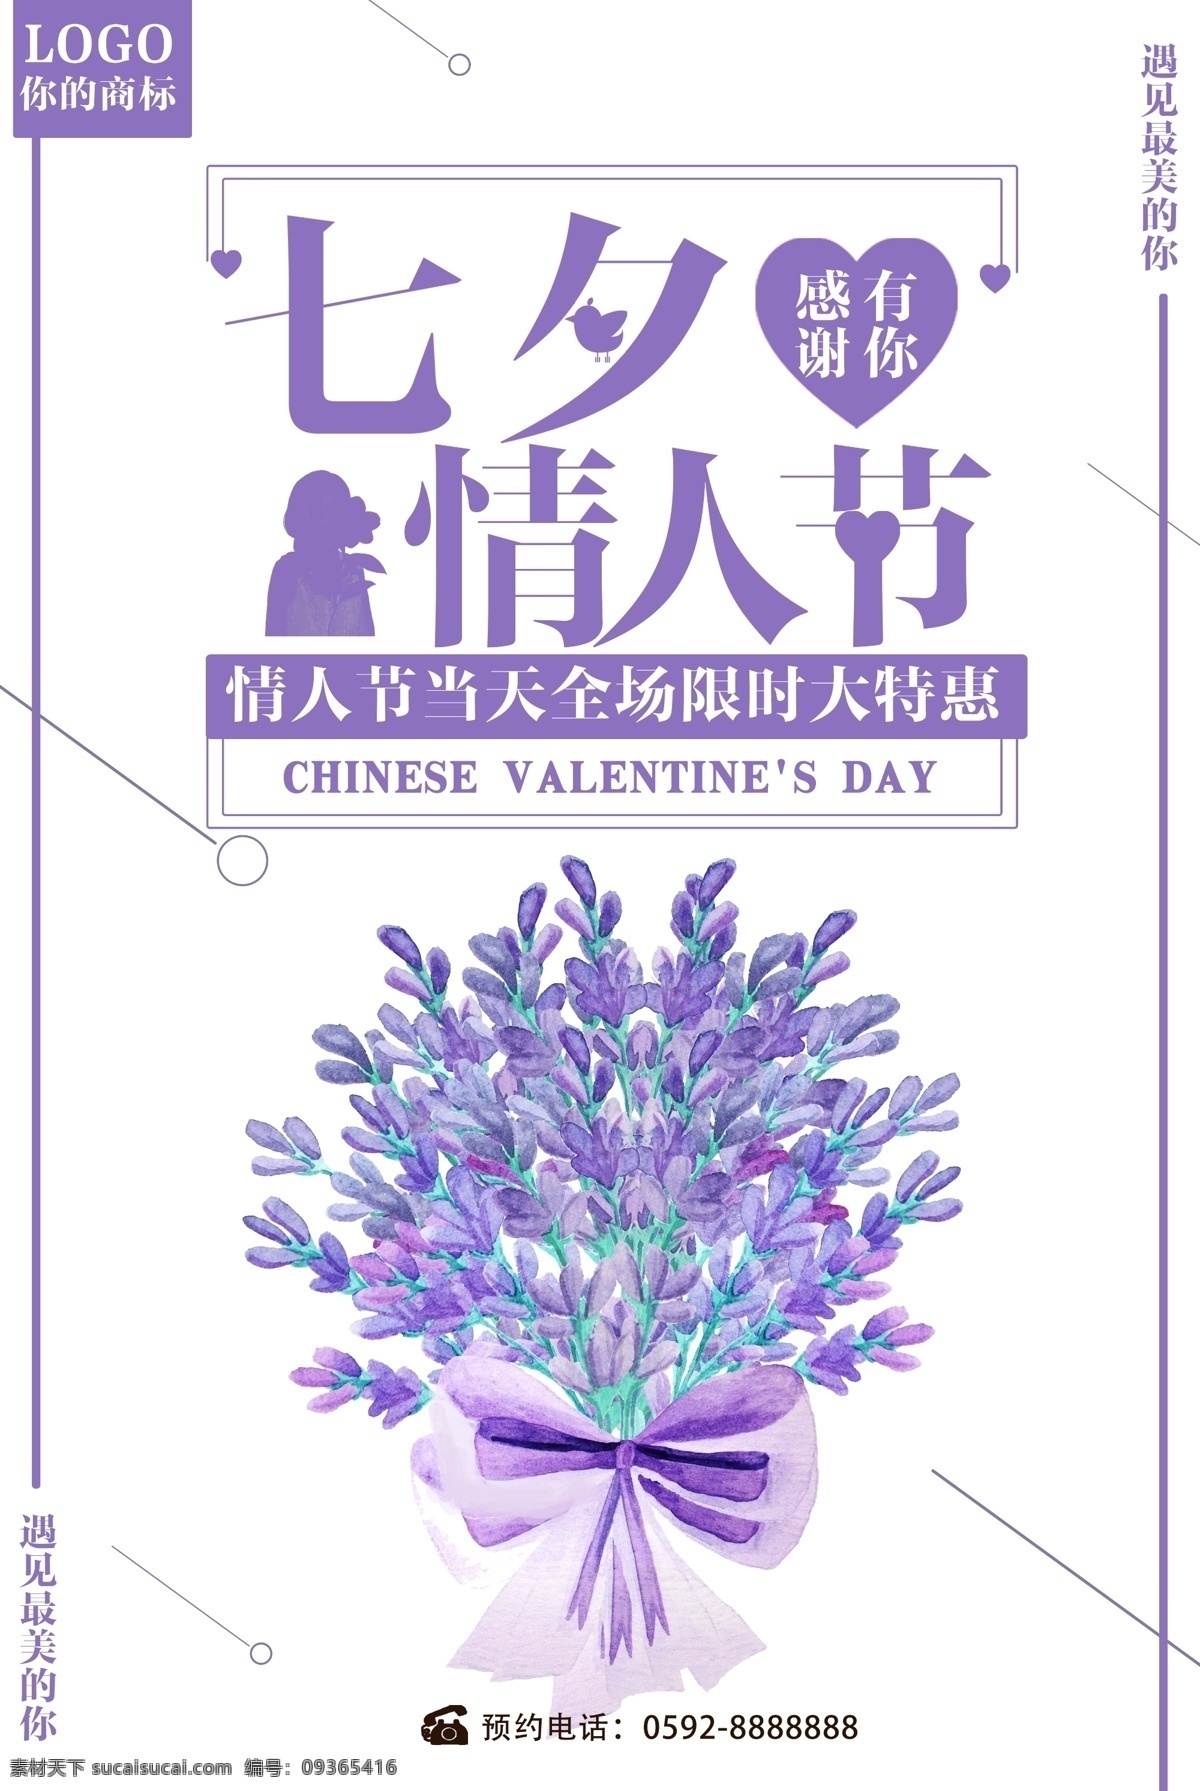 紫色 七夕 情人节 宣传海报 七夕节背景 七夕节展板 海报 模板 促销